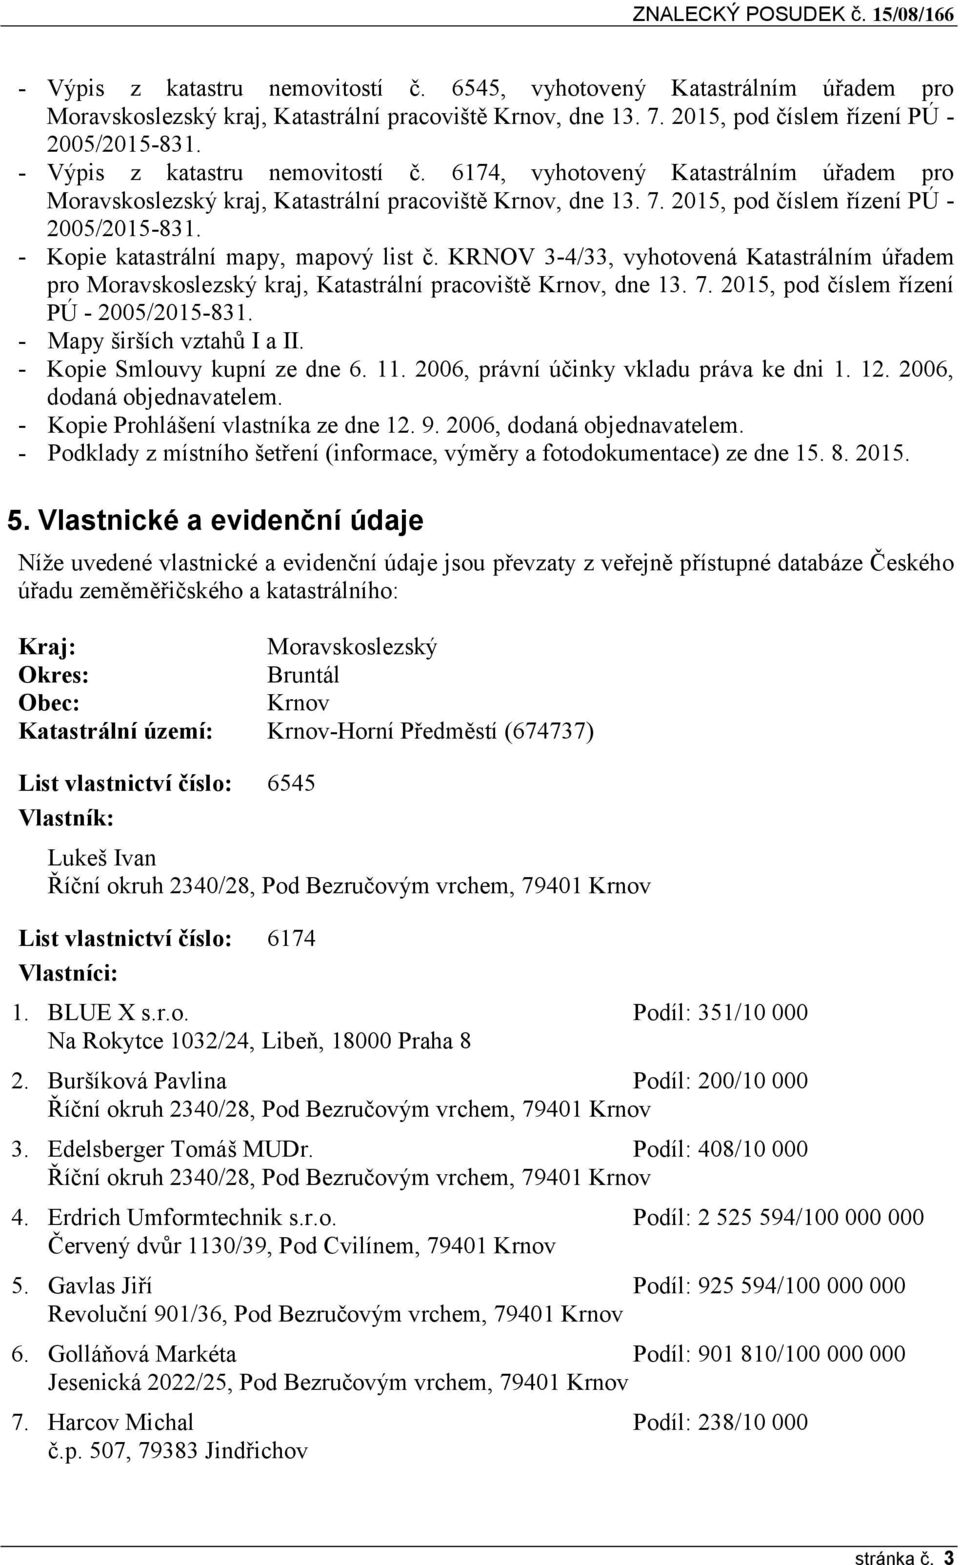 - Kopie katastrální mapy, mapový list č. KRNOV 3-4/33, vyhotovená Katastrálním úřadem pro Moravskoslezský kraj, Katastrální pracoviště Krnov, dne 13. 7. 2015, pod číslem řízení PÚ - 2005/2015-831.